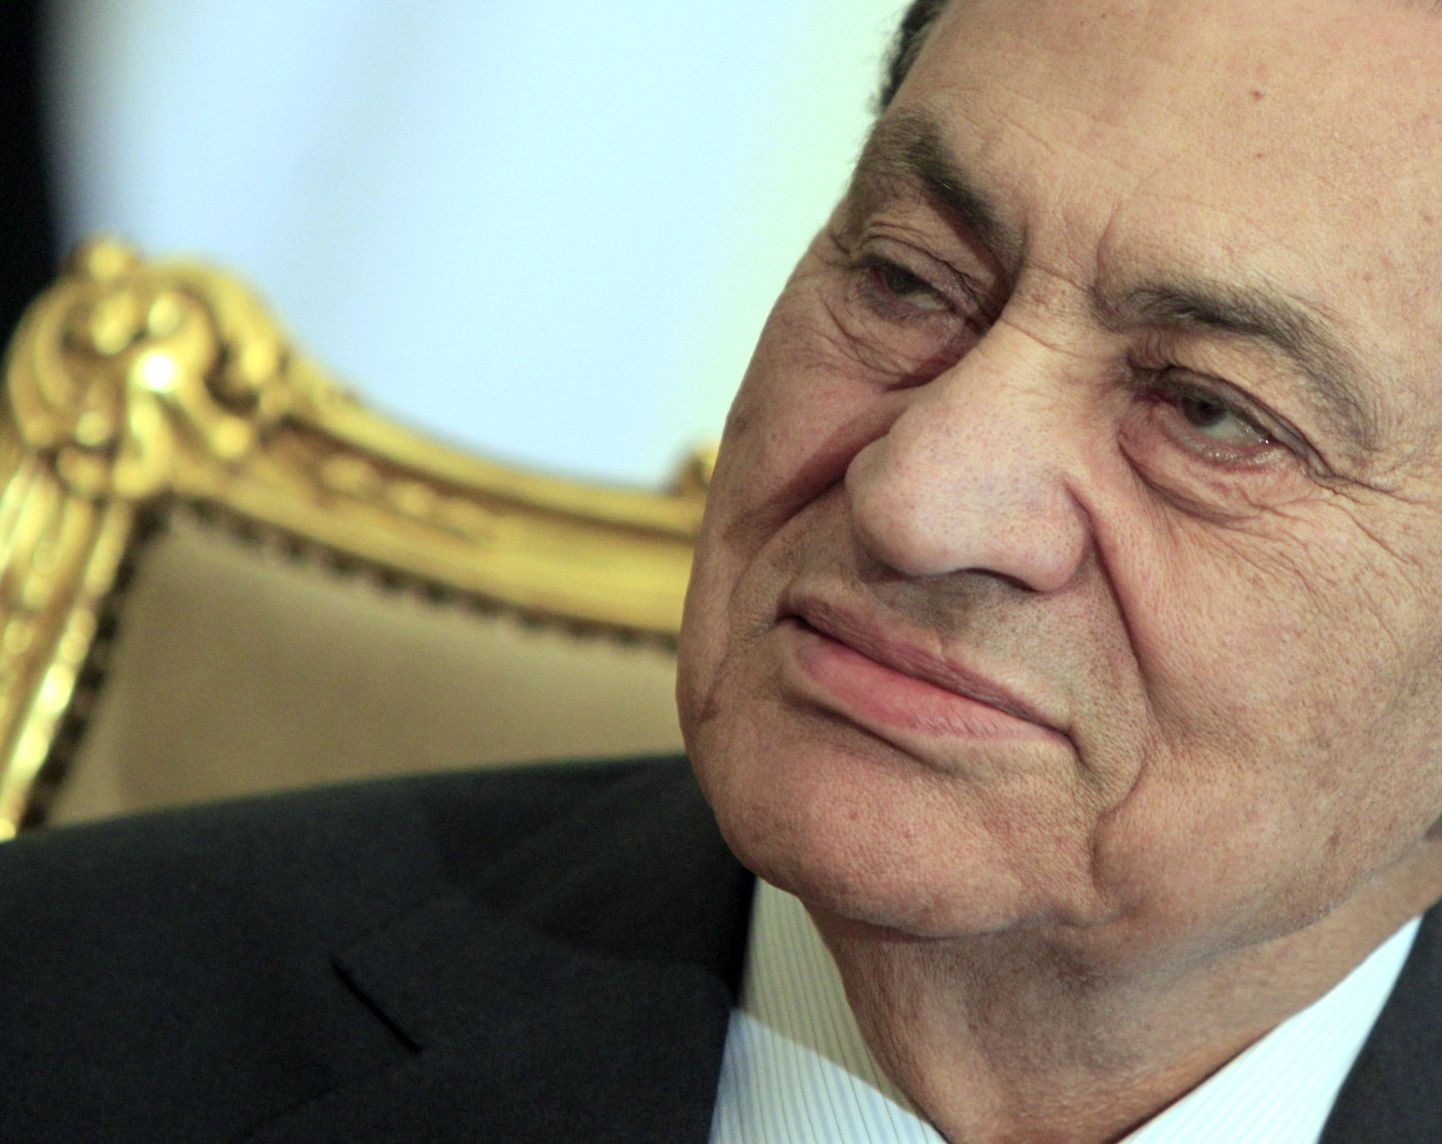 Хосни Мубарак.